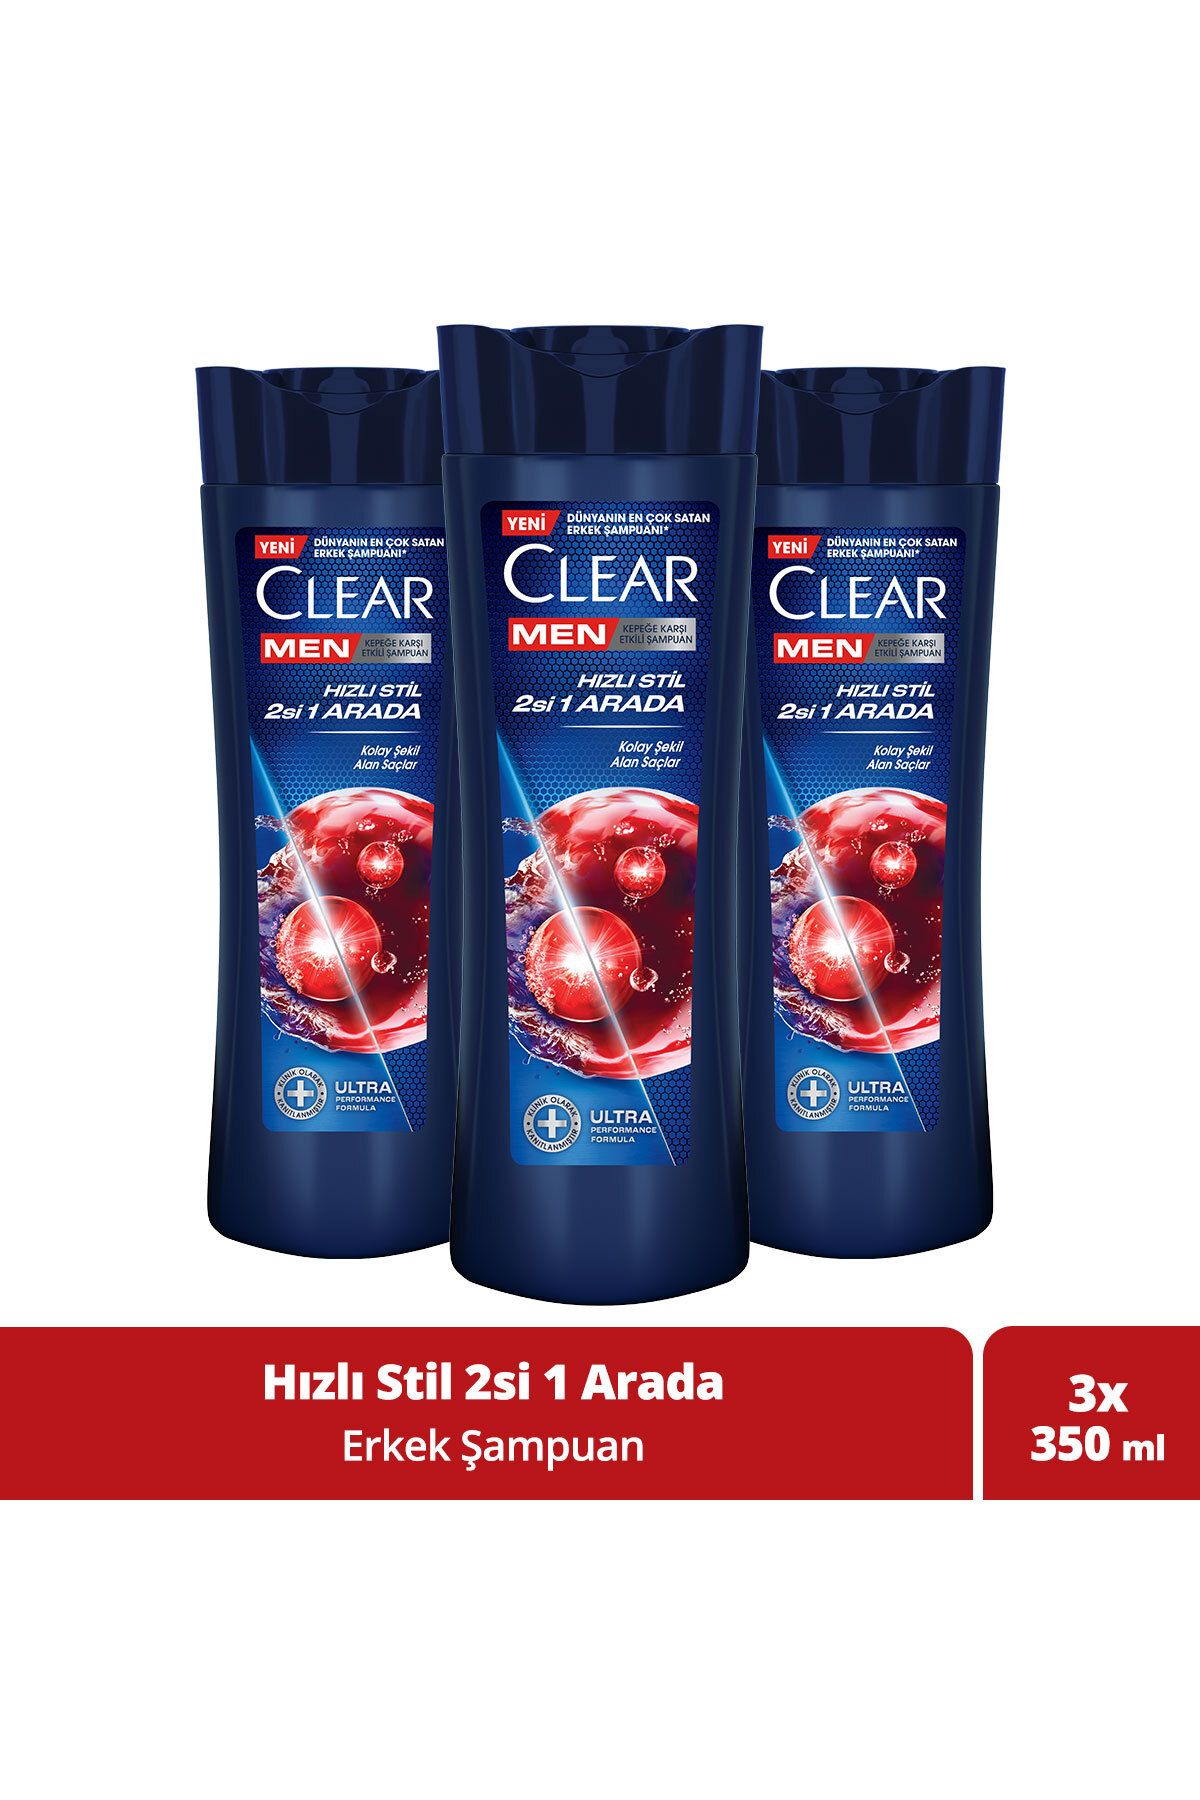 Clear Men Kepeğe Karşı Etkili Şampuan Hızlı Stil 2si 1 Arada 350 ml x 3